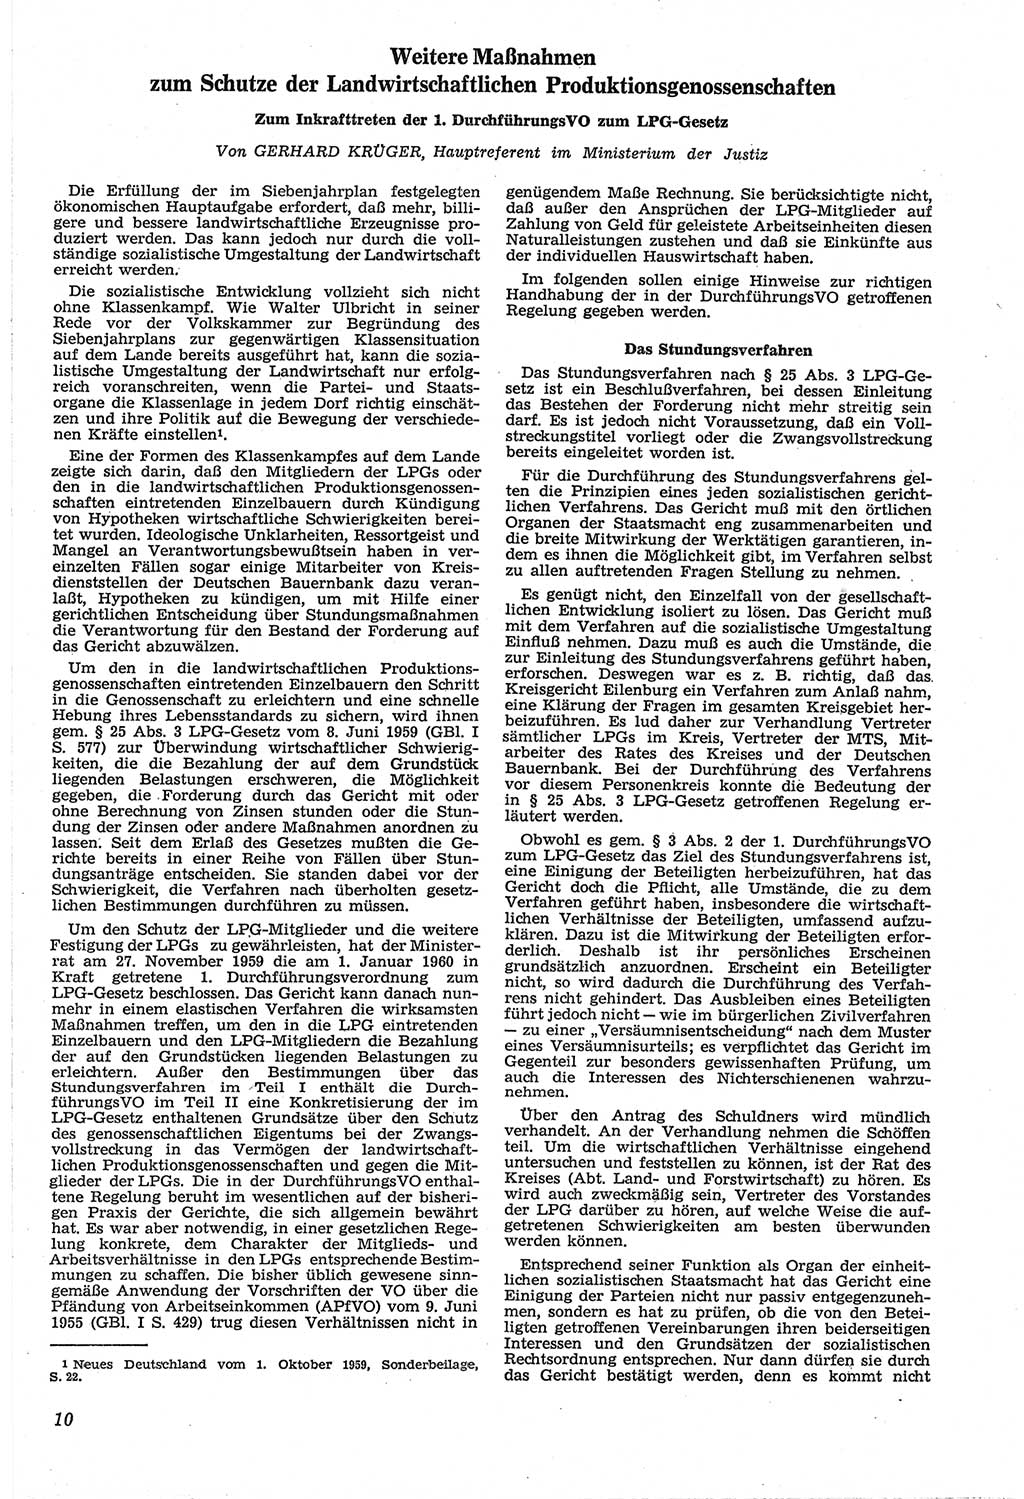 Neue Justiz (NJ), Zeitschrift für Recht und Rechtswissenschaft [Deutsche Demokratische Republik (DDR)], 14. Jahrgang 1960, Seite 10 (NJ DDR 1960, S. 10)